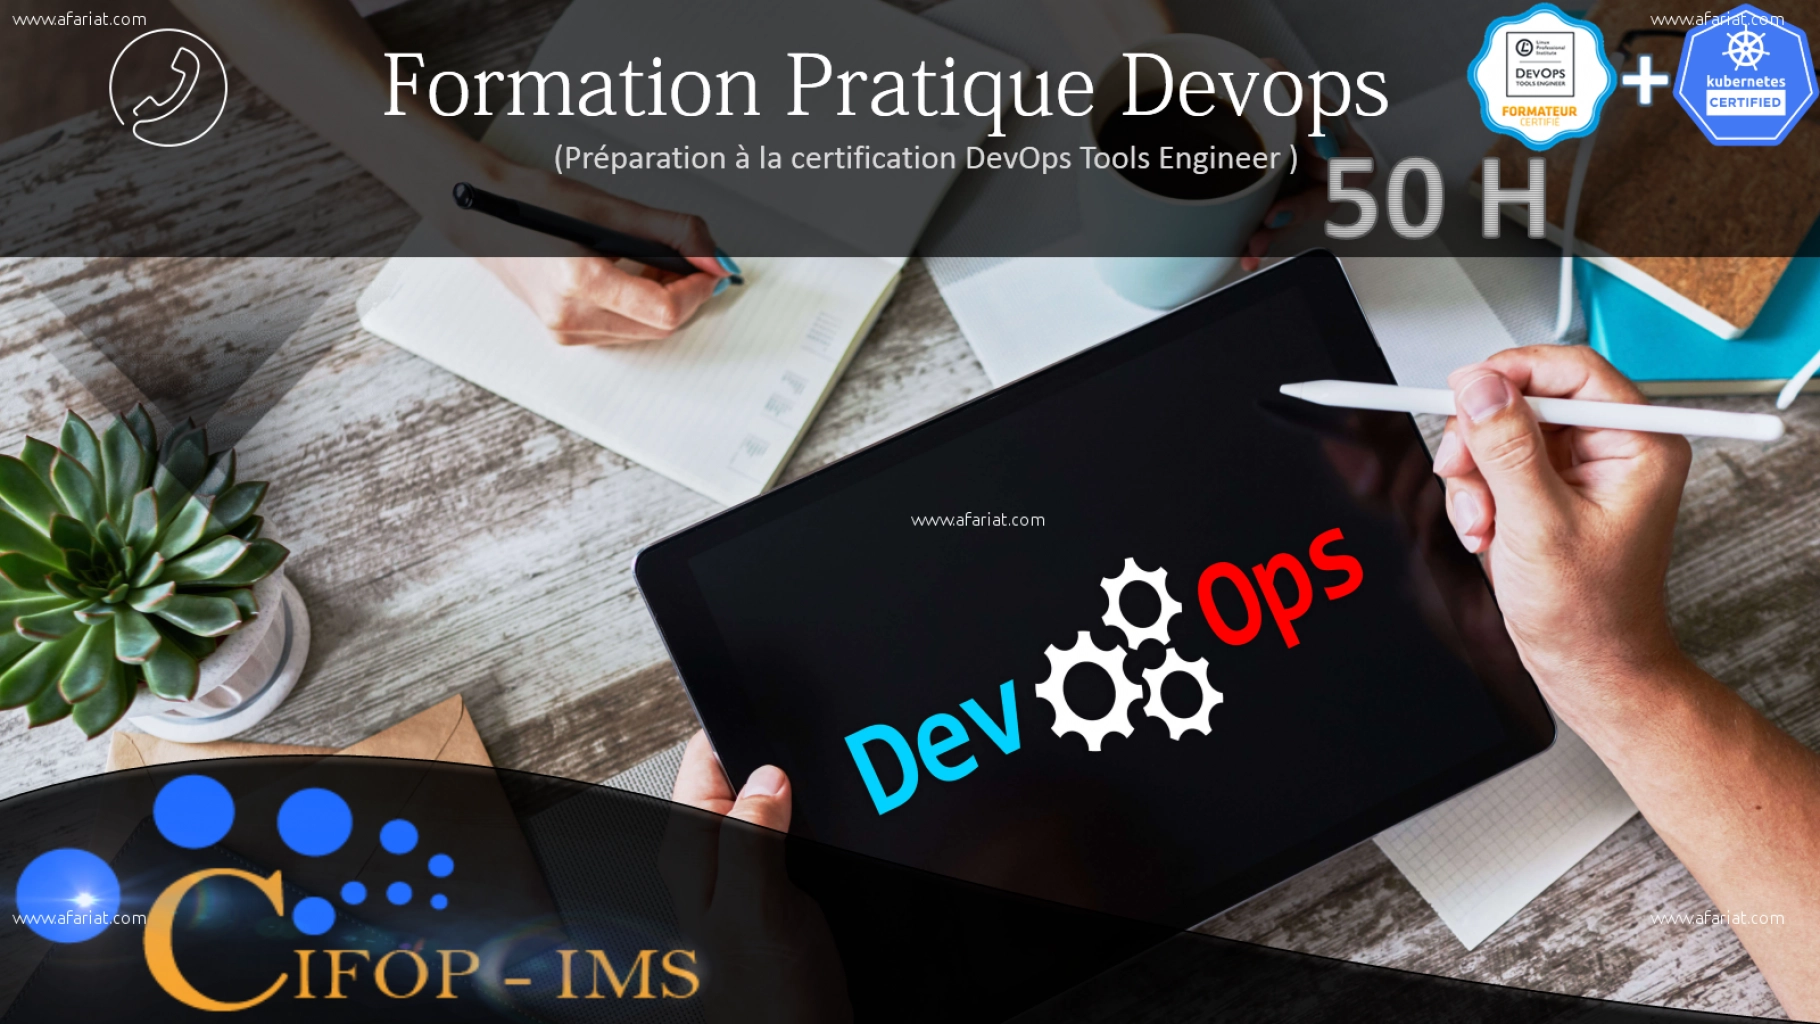 #Formation pratique_en_DevOps